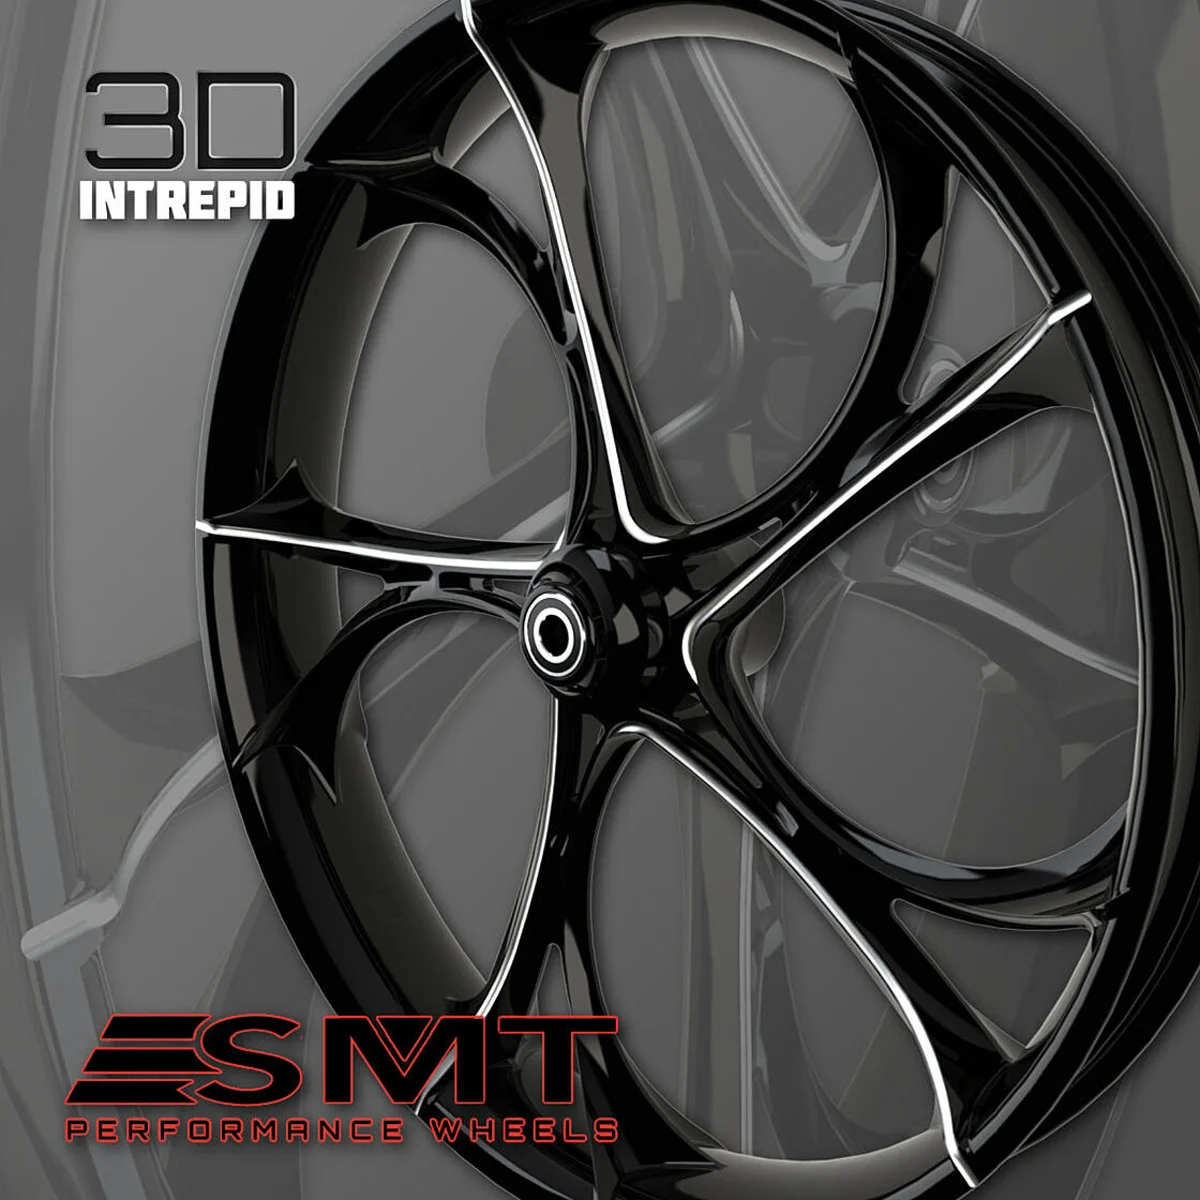 New Intrepid 3D custom motorcycle wheel